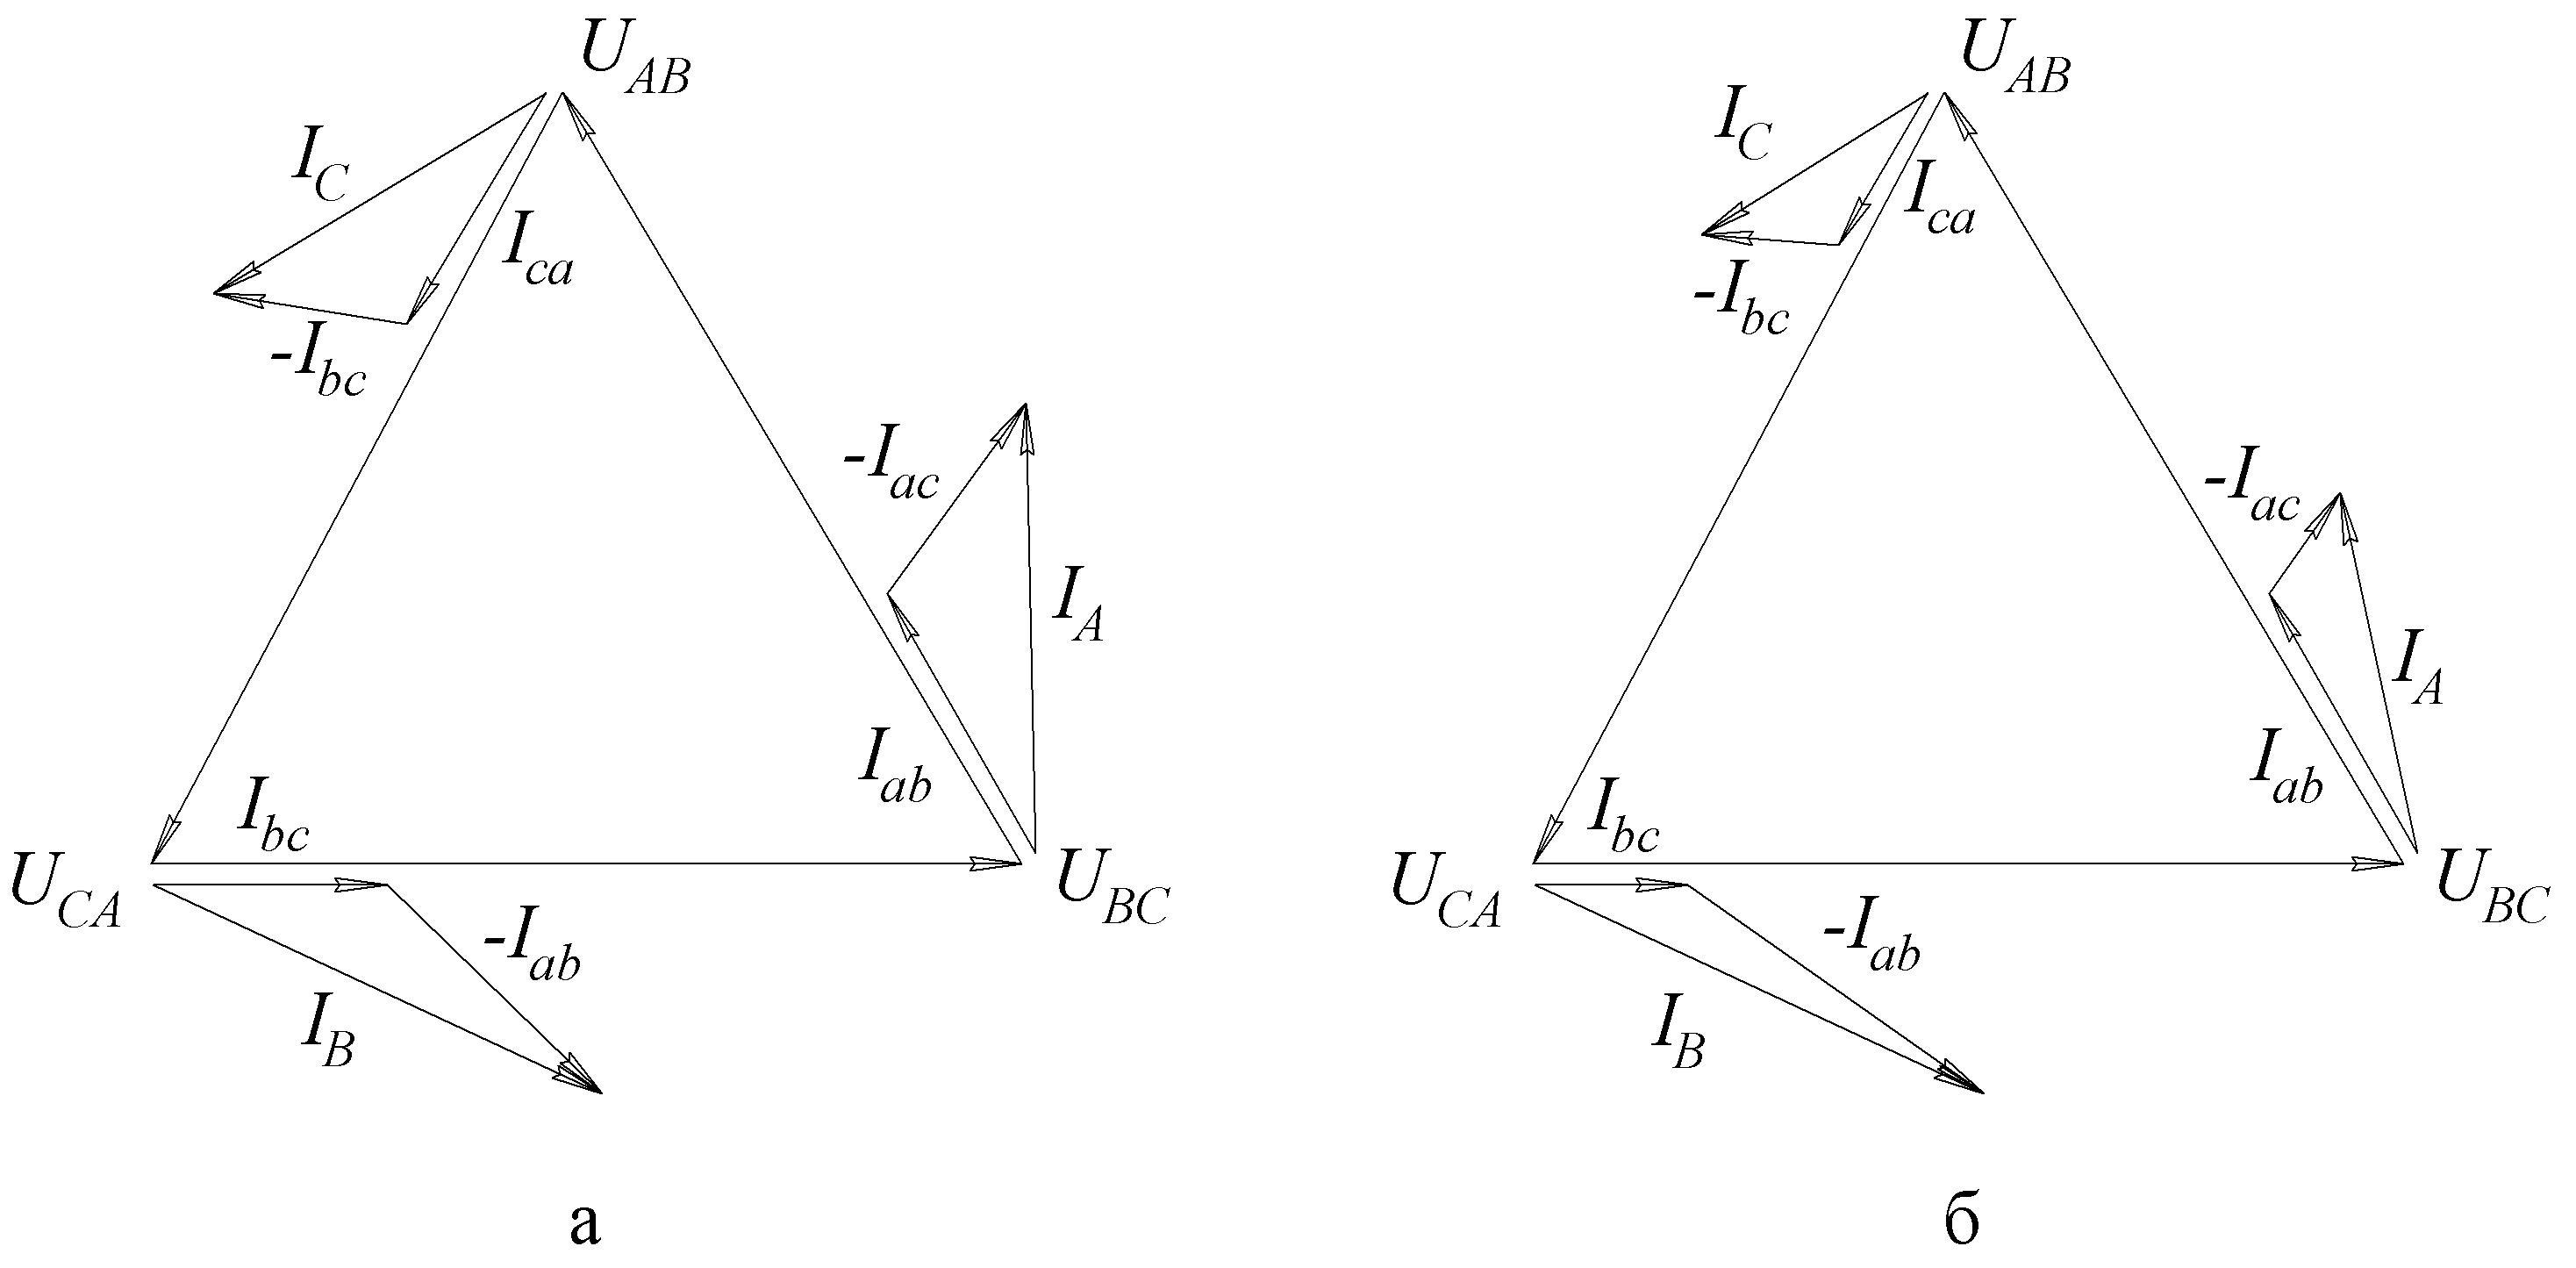 Соединение звезда векторная диаграмма. Соединение треугольником в трехфазной цепи Векторная диаграмма. Векторная диаграмма токов и напряжений для трехфазной цепи. Векторная диаграмма для несимметричной нагрузки звезда. Векторная диаграмма токов и напряжений при соединении звездой.